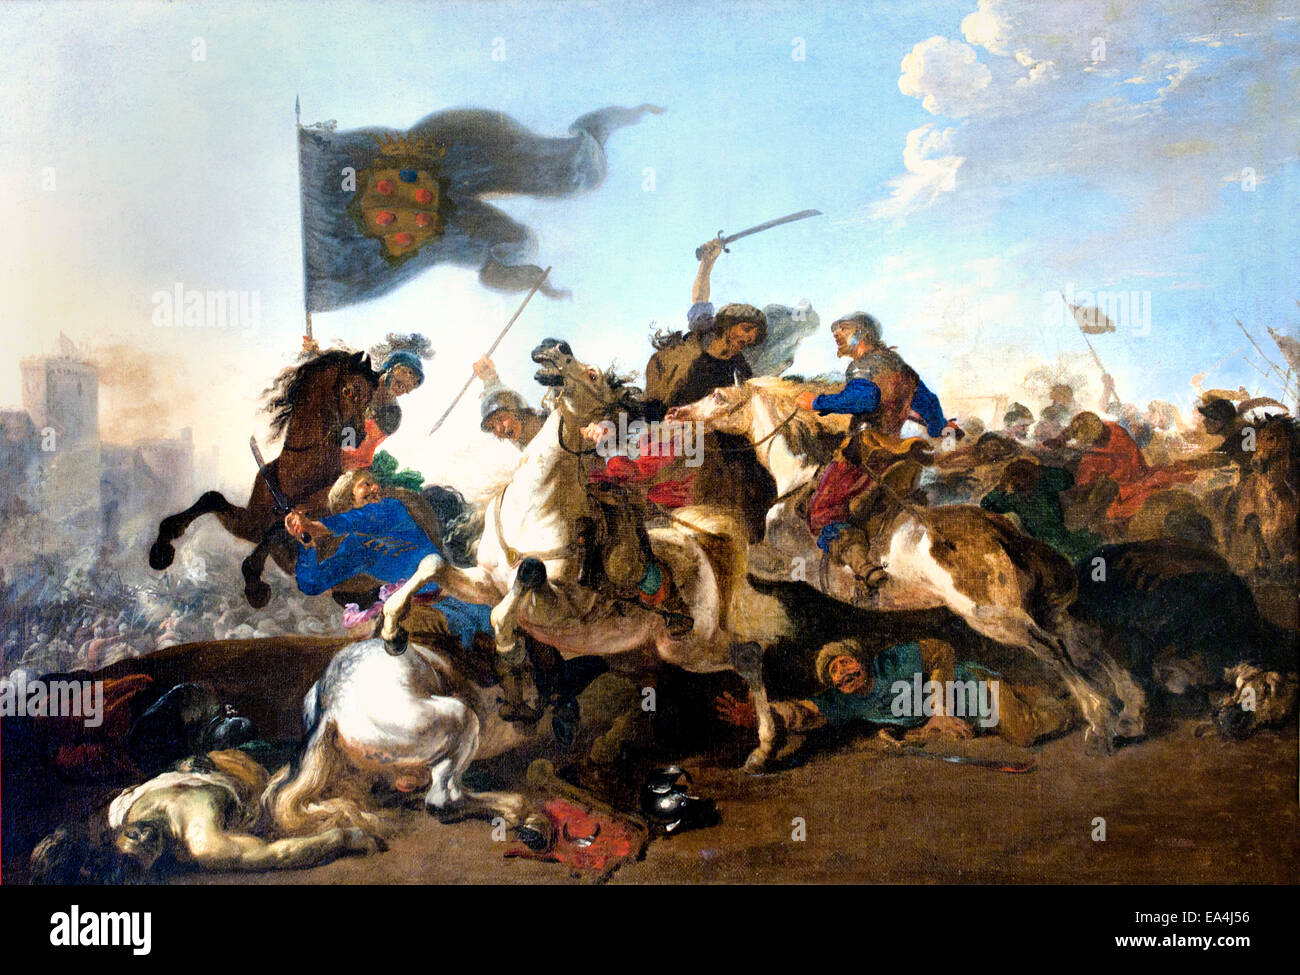 Combat de cavaliers - Bataille de cavaliers par Michelangelo Cerquozzi 1602 - 1660 peintre italien baroque italien Rome Italie Banque D'Images